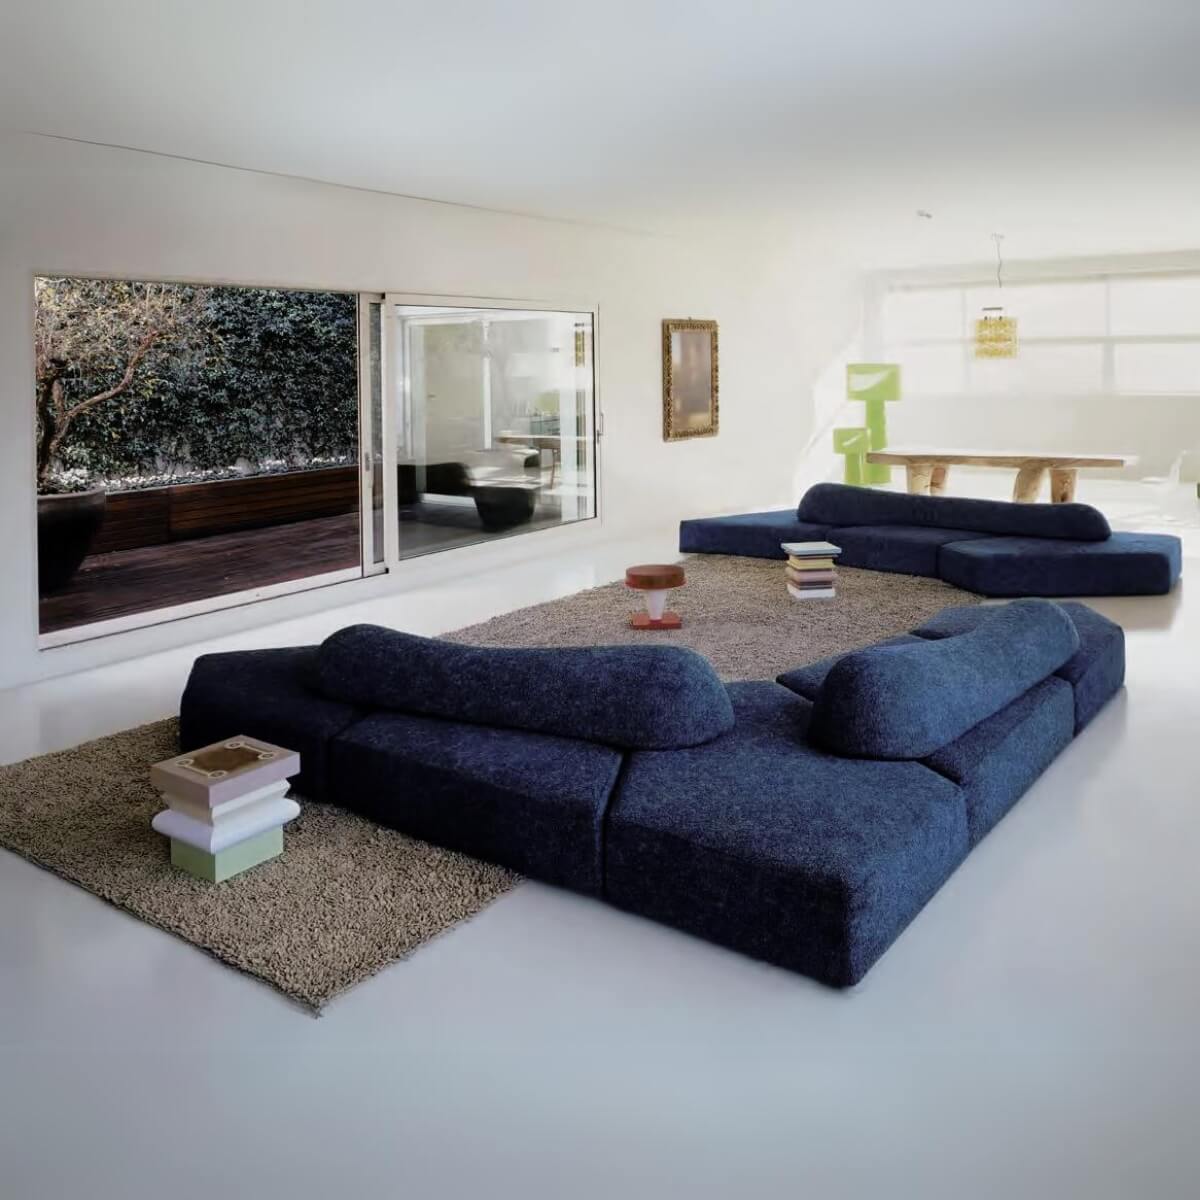 Dreamweaver Teddy fabric Sofa Set: A Soft and Serene Escape (Custom made)